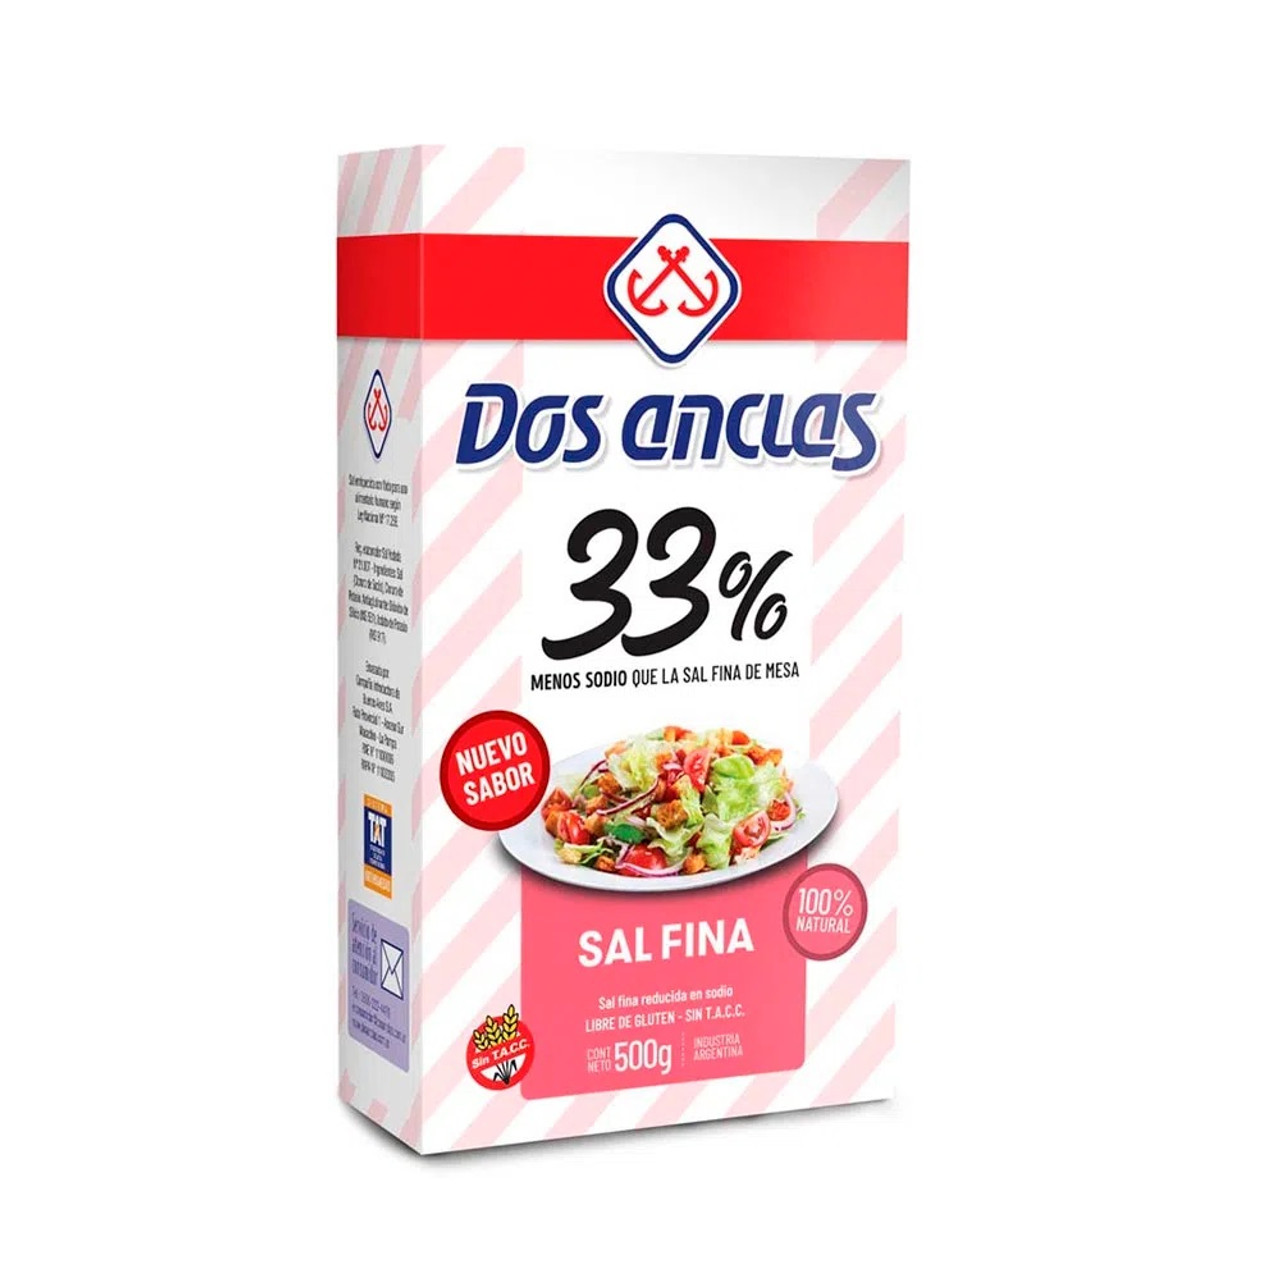 Dos Anclas Sal Fina Reducida En Sodio 33% Less Sodium Salt, 500 g / 1.1 lb